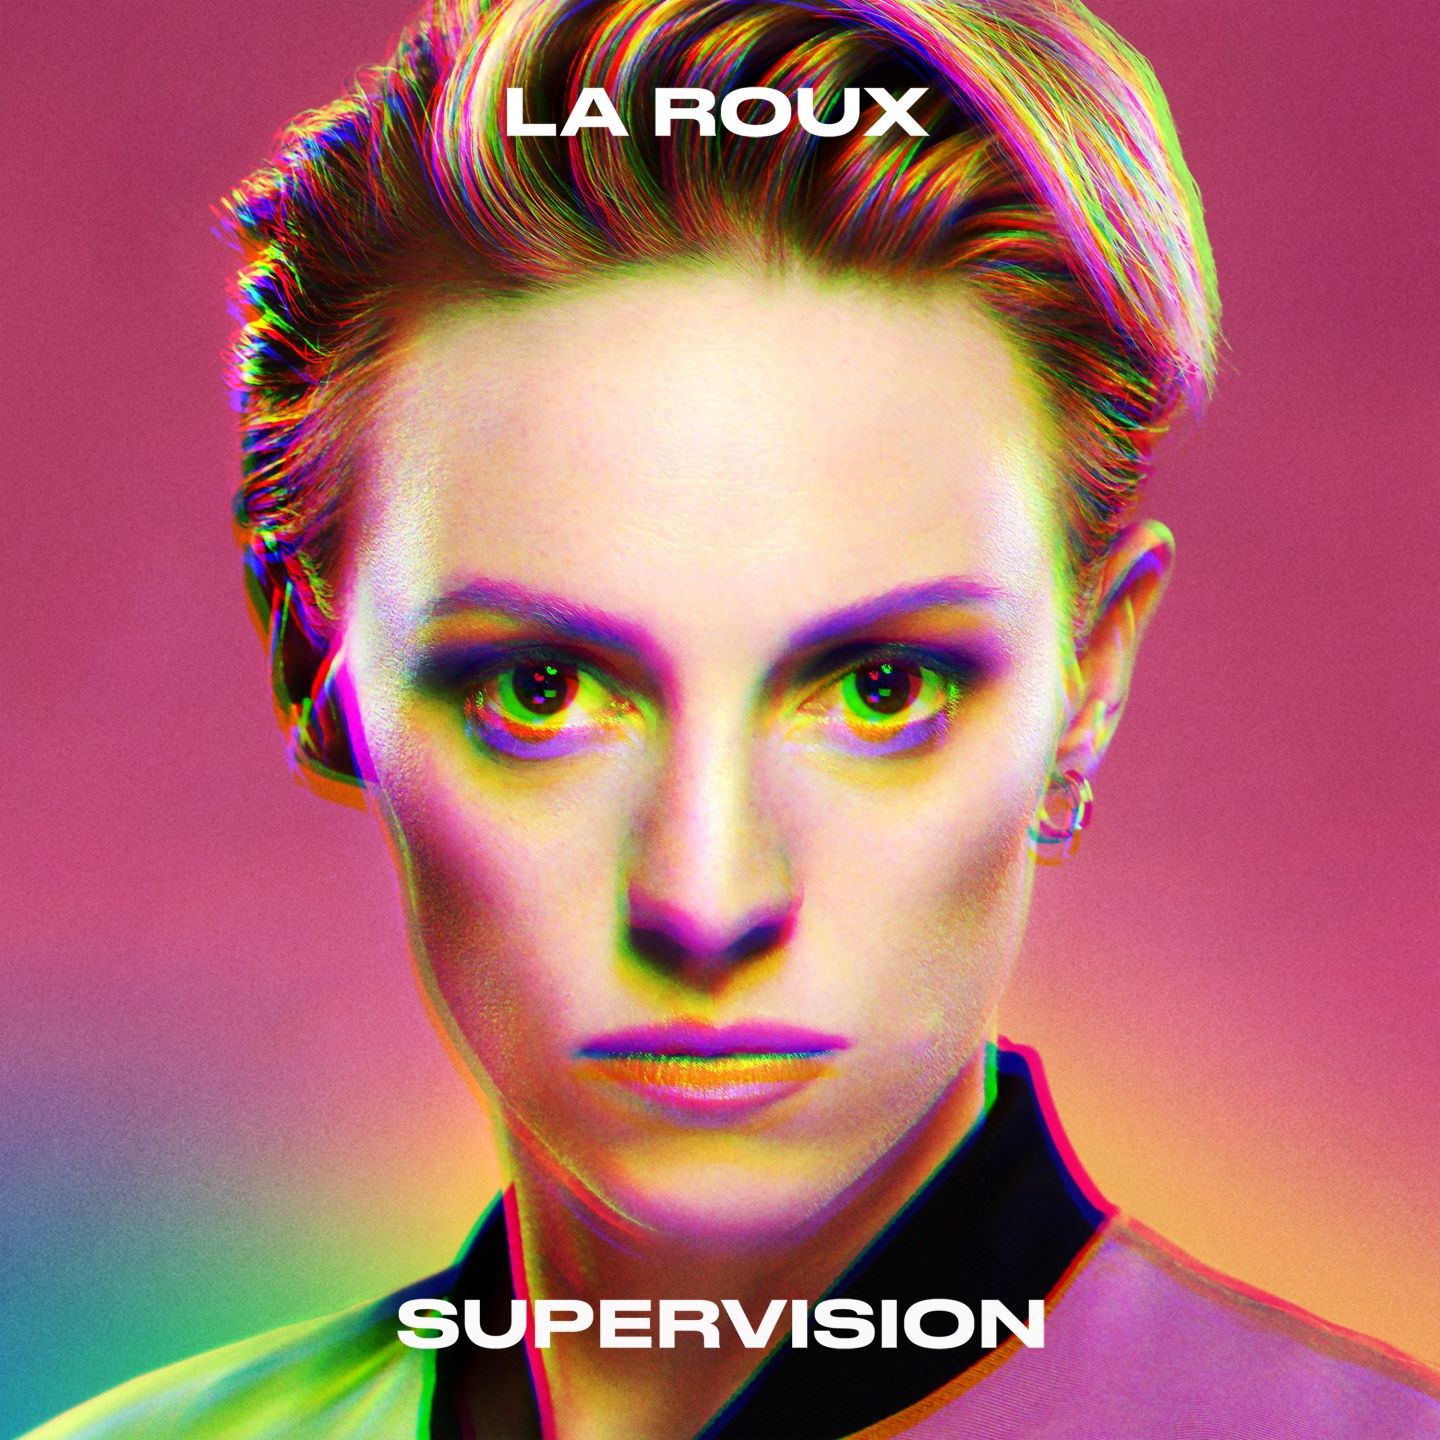 La Roux - Supervision (2020) [FLAC 24bit/96kHz]